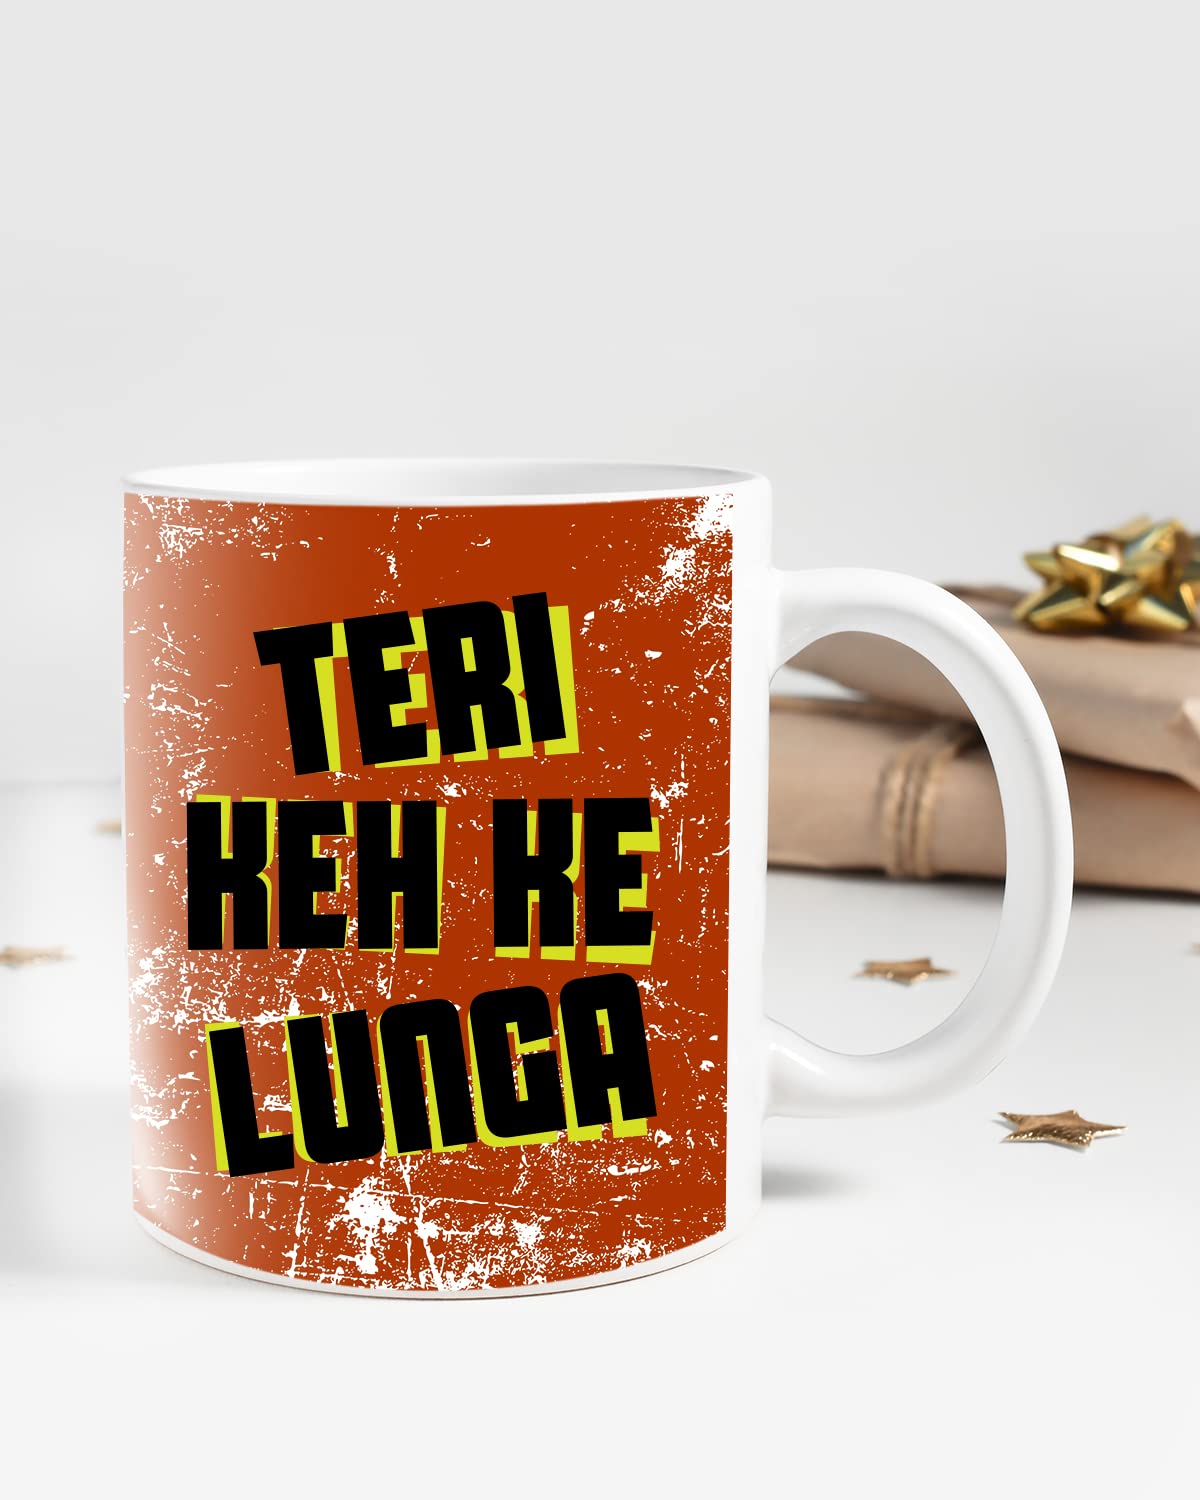 KEH KE Lunga Coffee Mug - Gift for Friend, Birthday Gift, Birthday Mug, Printed with Funny & Funky Dialogues, Bollywood & Web Series Mugs, Funny Mugs